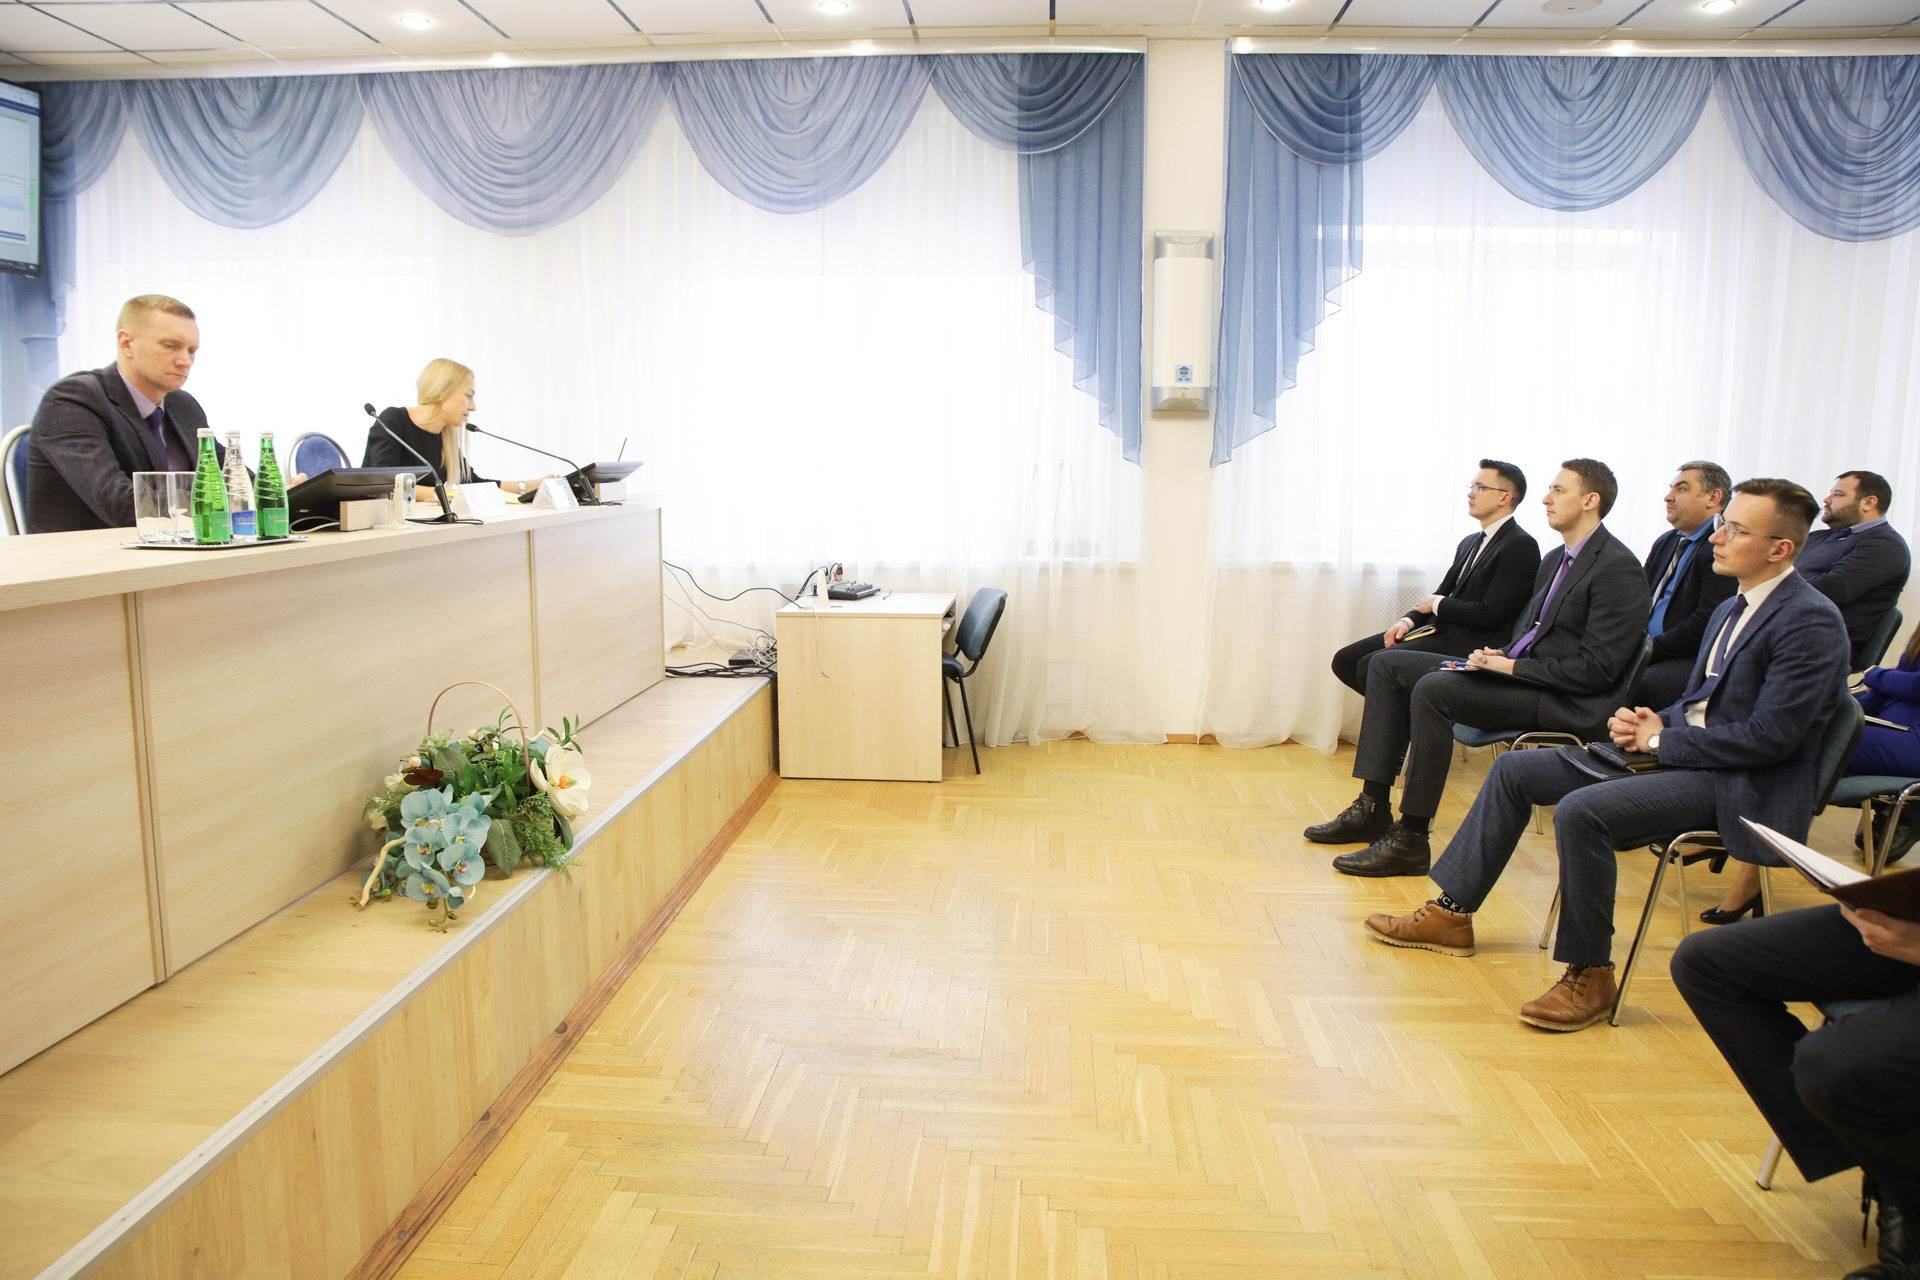 Встреча специалистов, занятых в сфере обслуживания населения в ПУ "Витебскгаз"